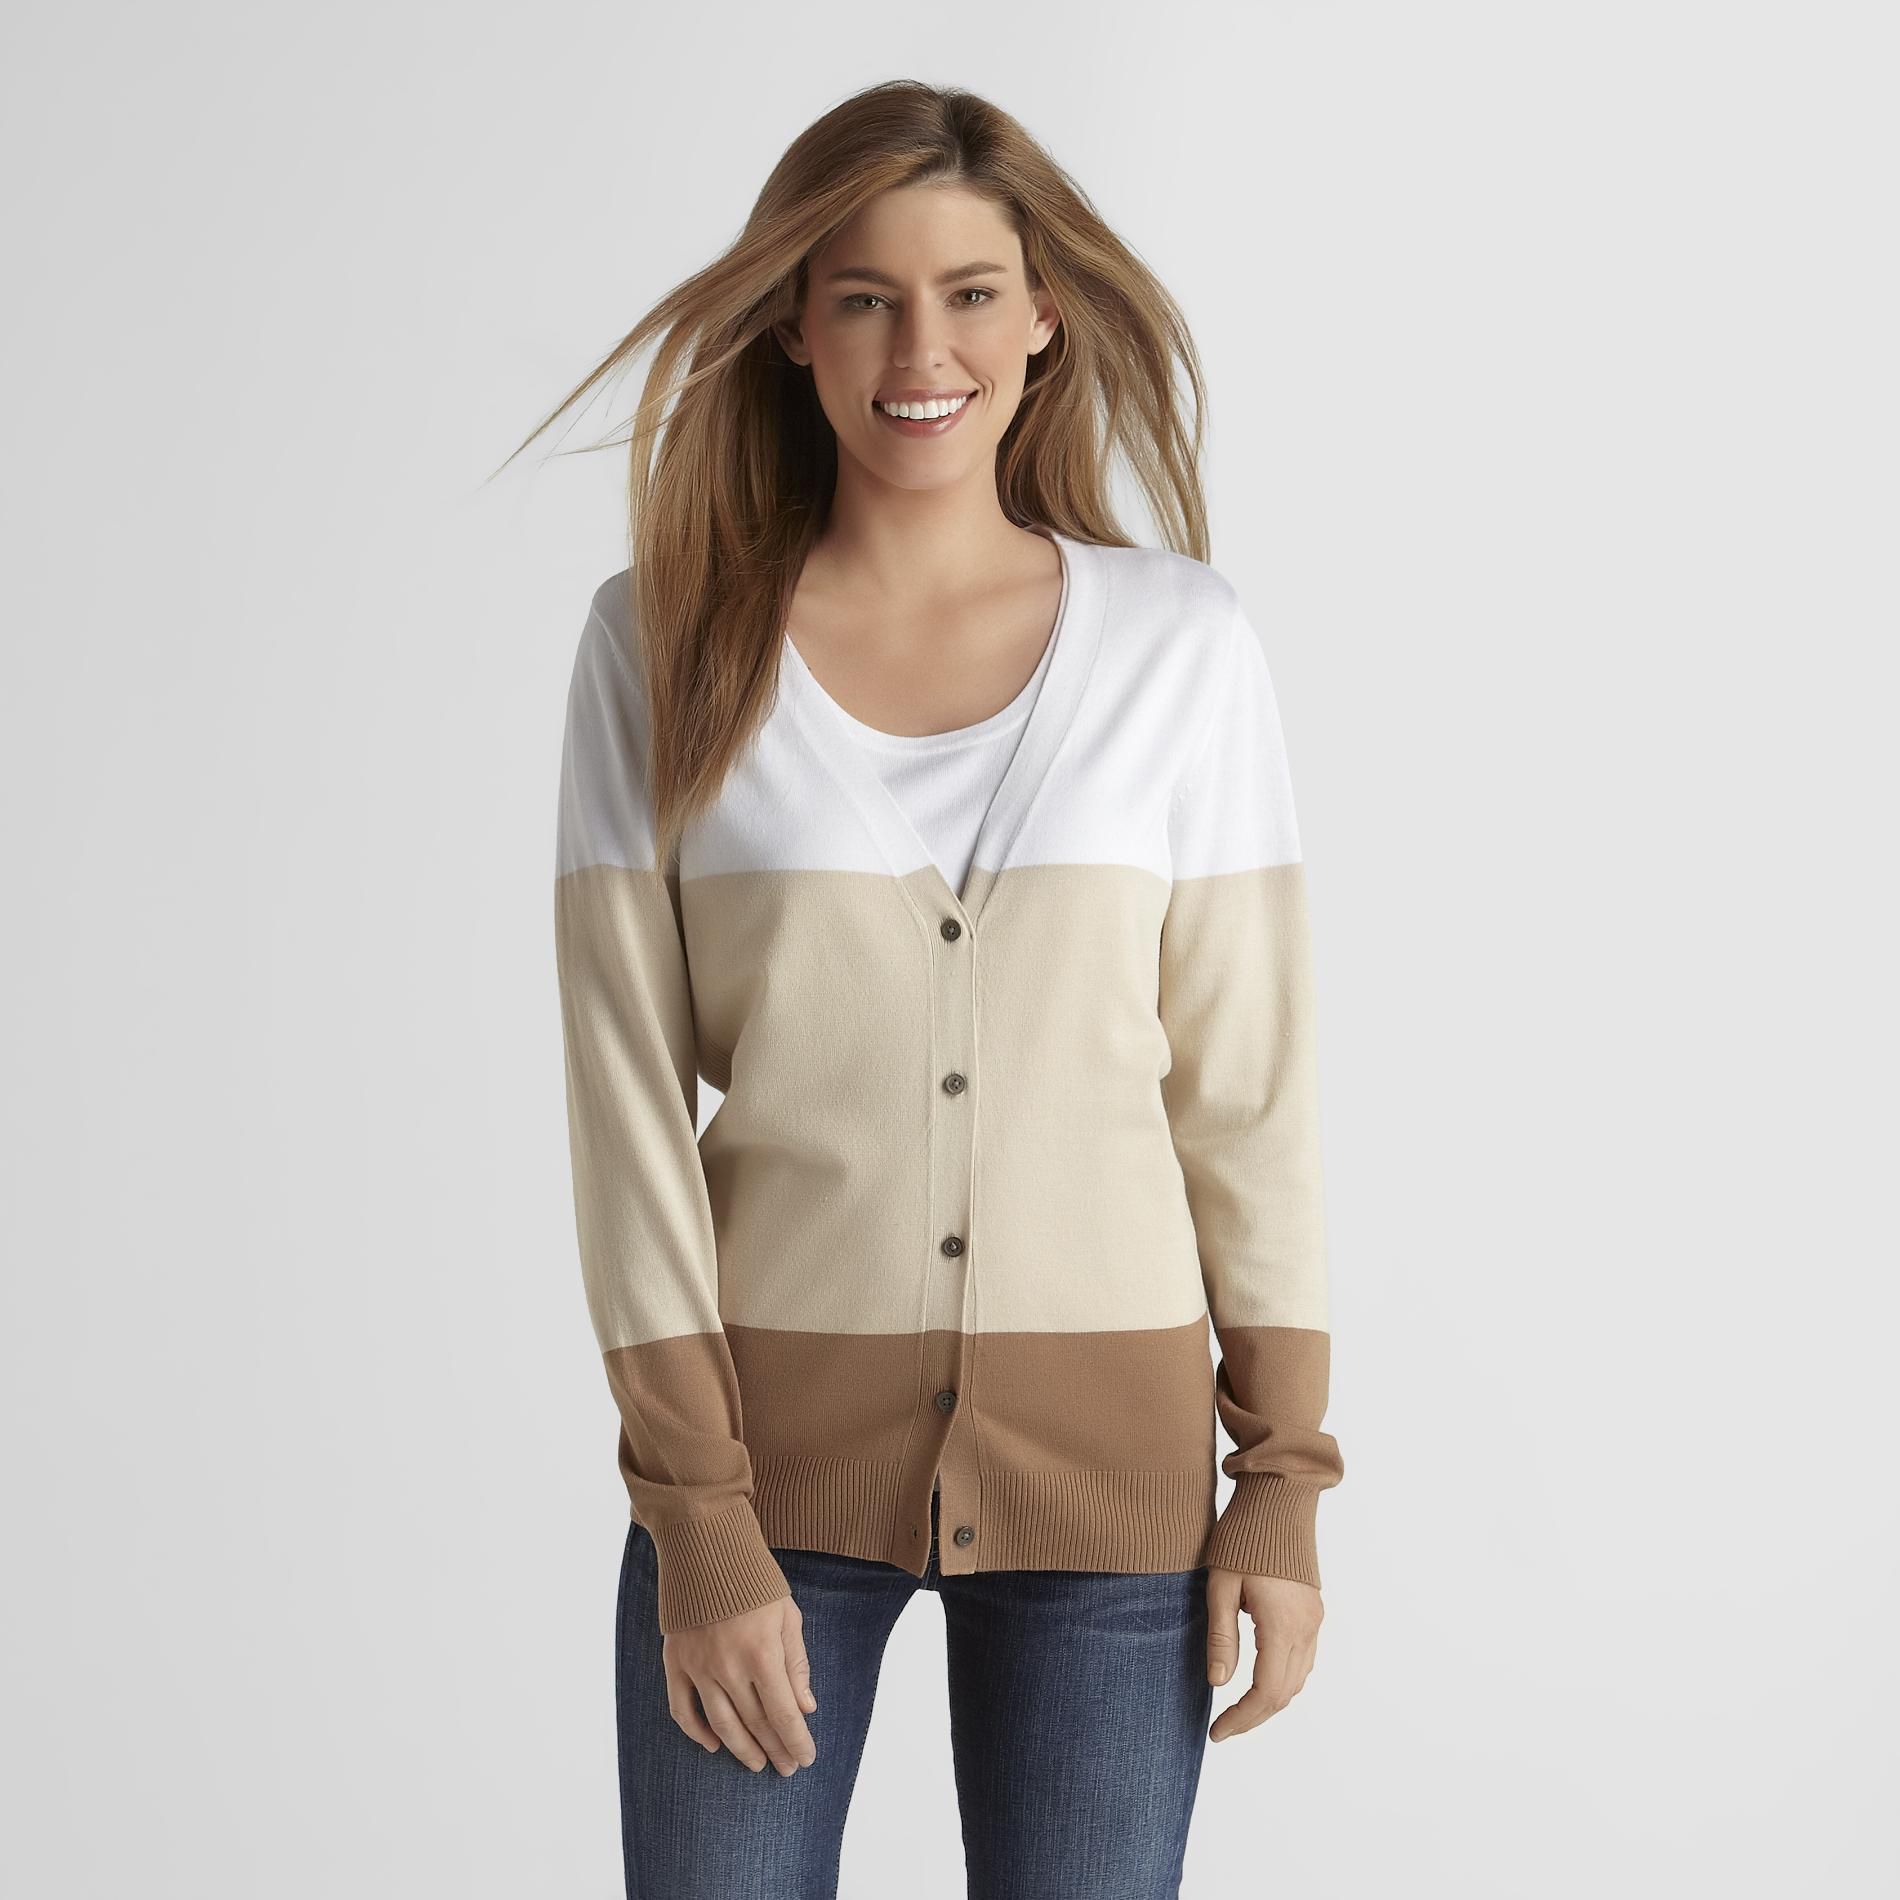 Covington Women's Cardigan Sweater - Colorblock